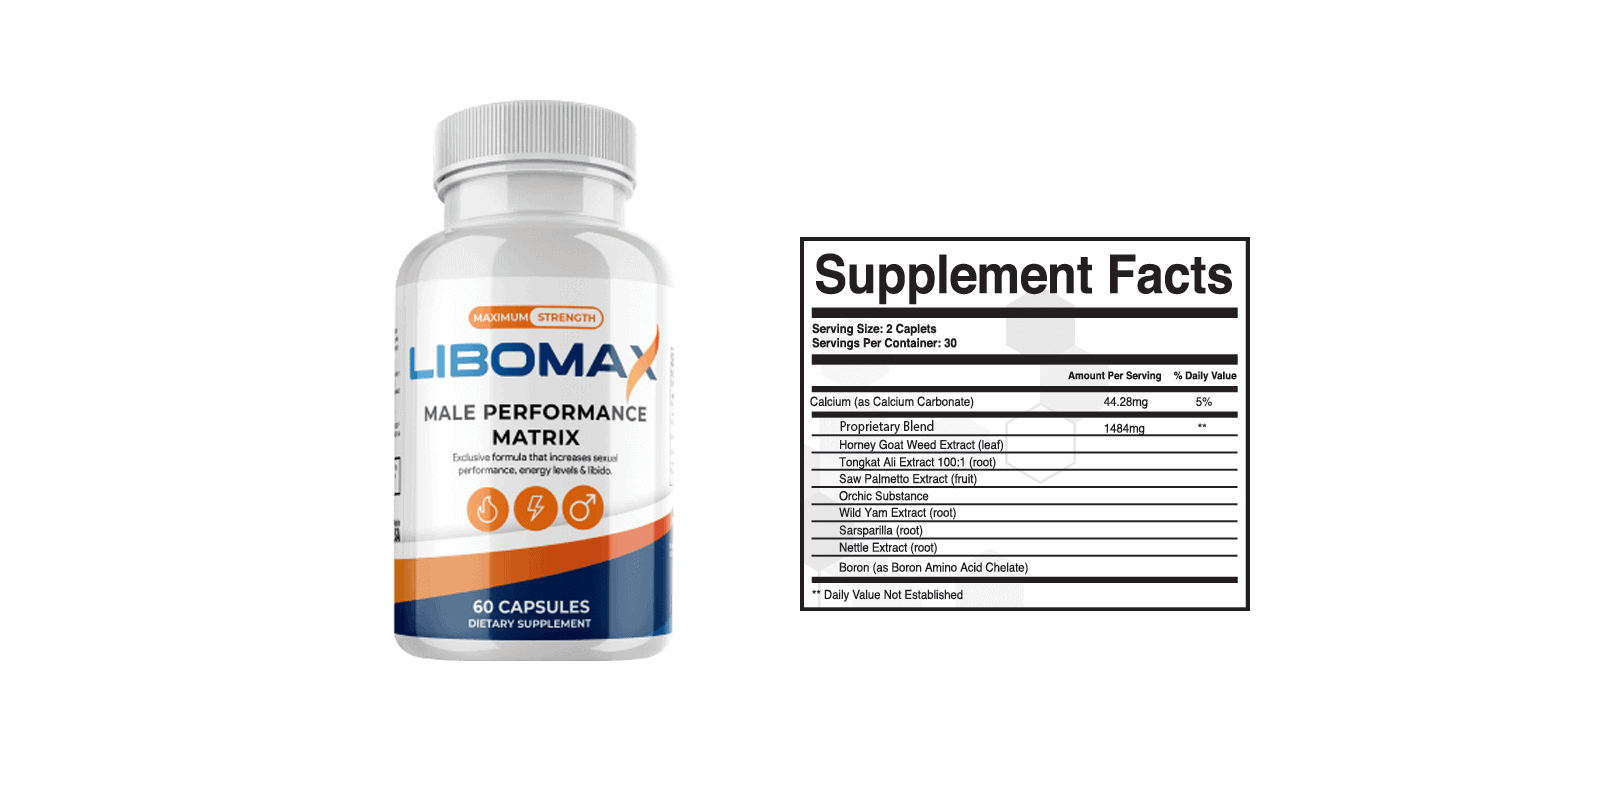 Libomax dosage